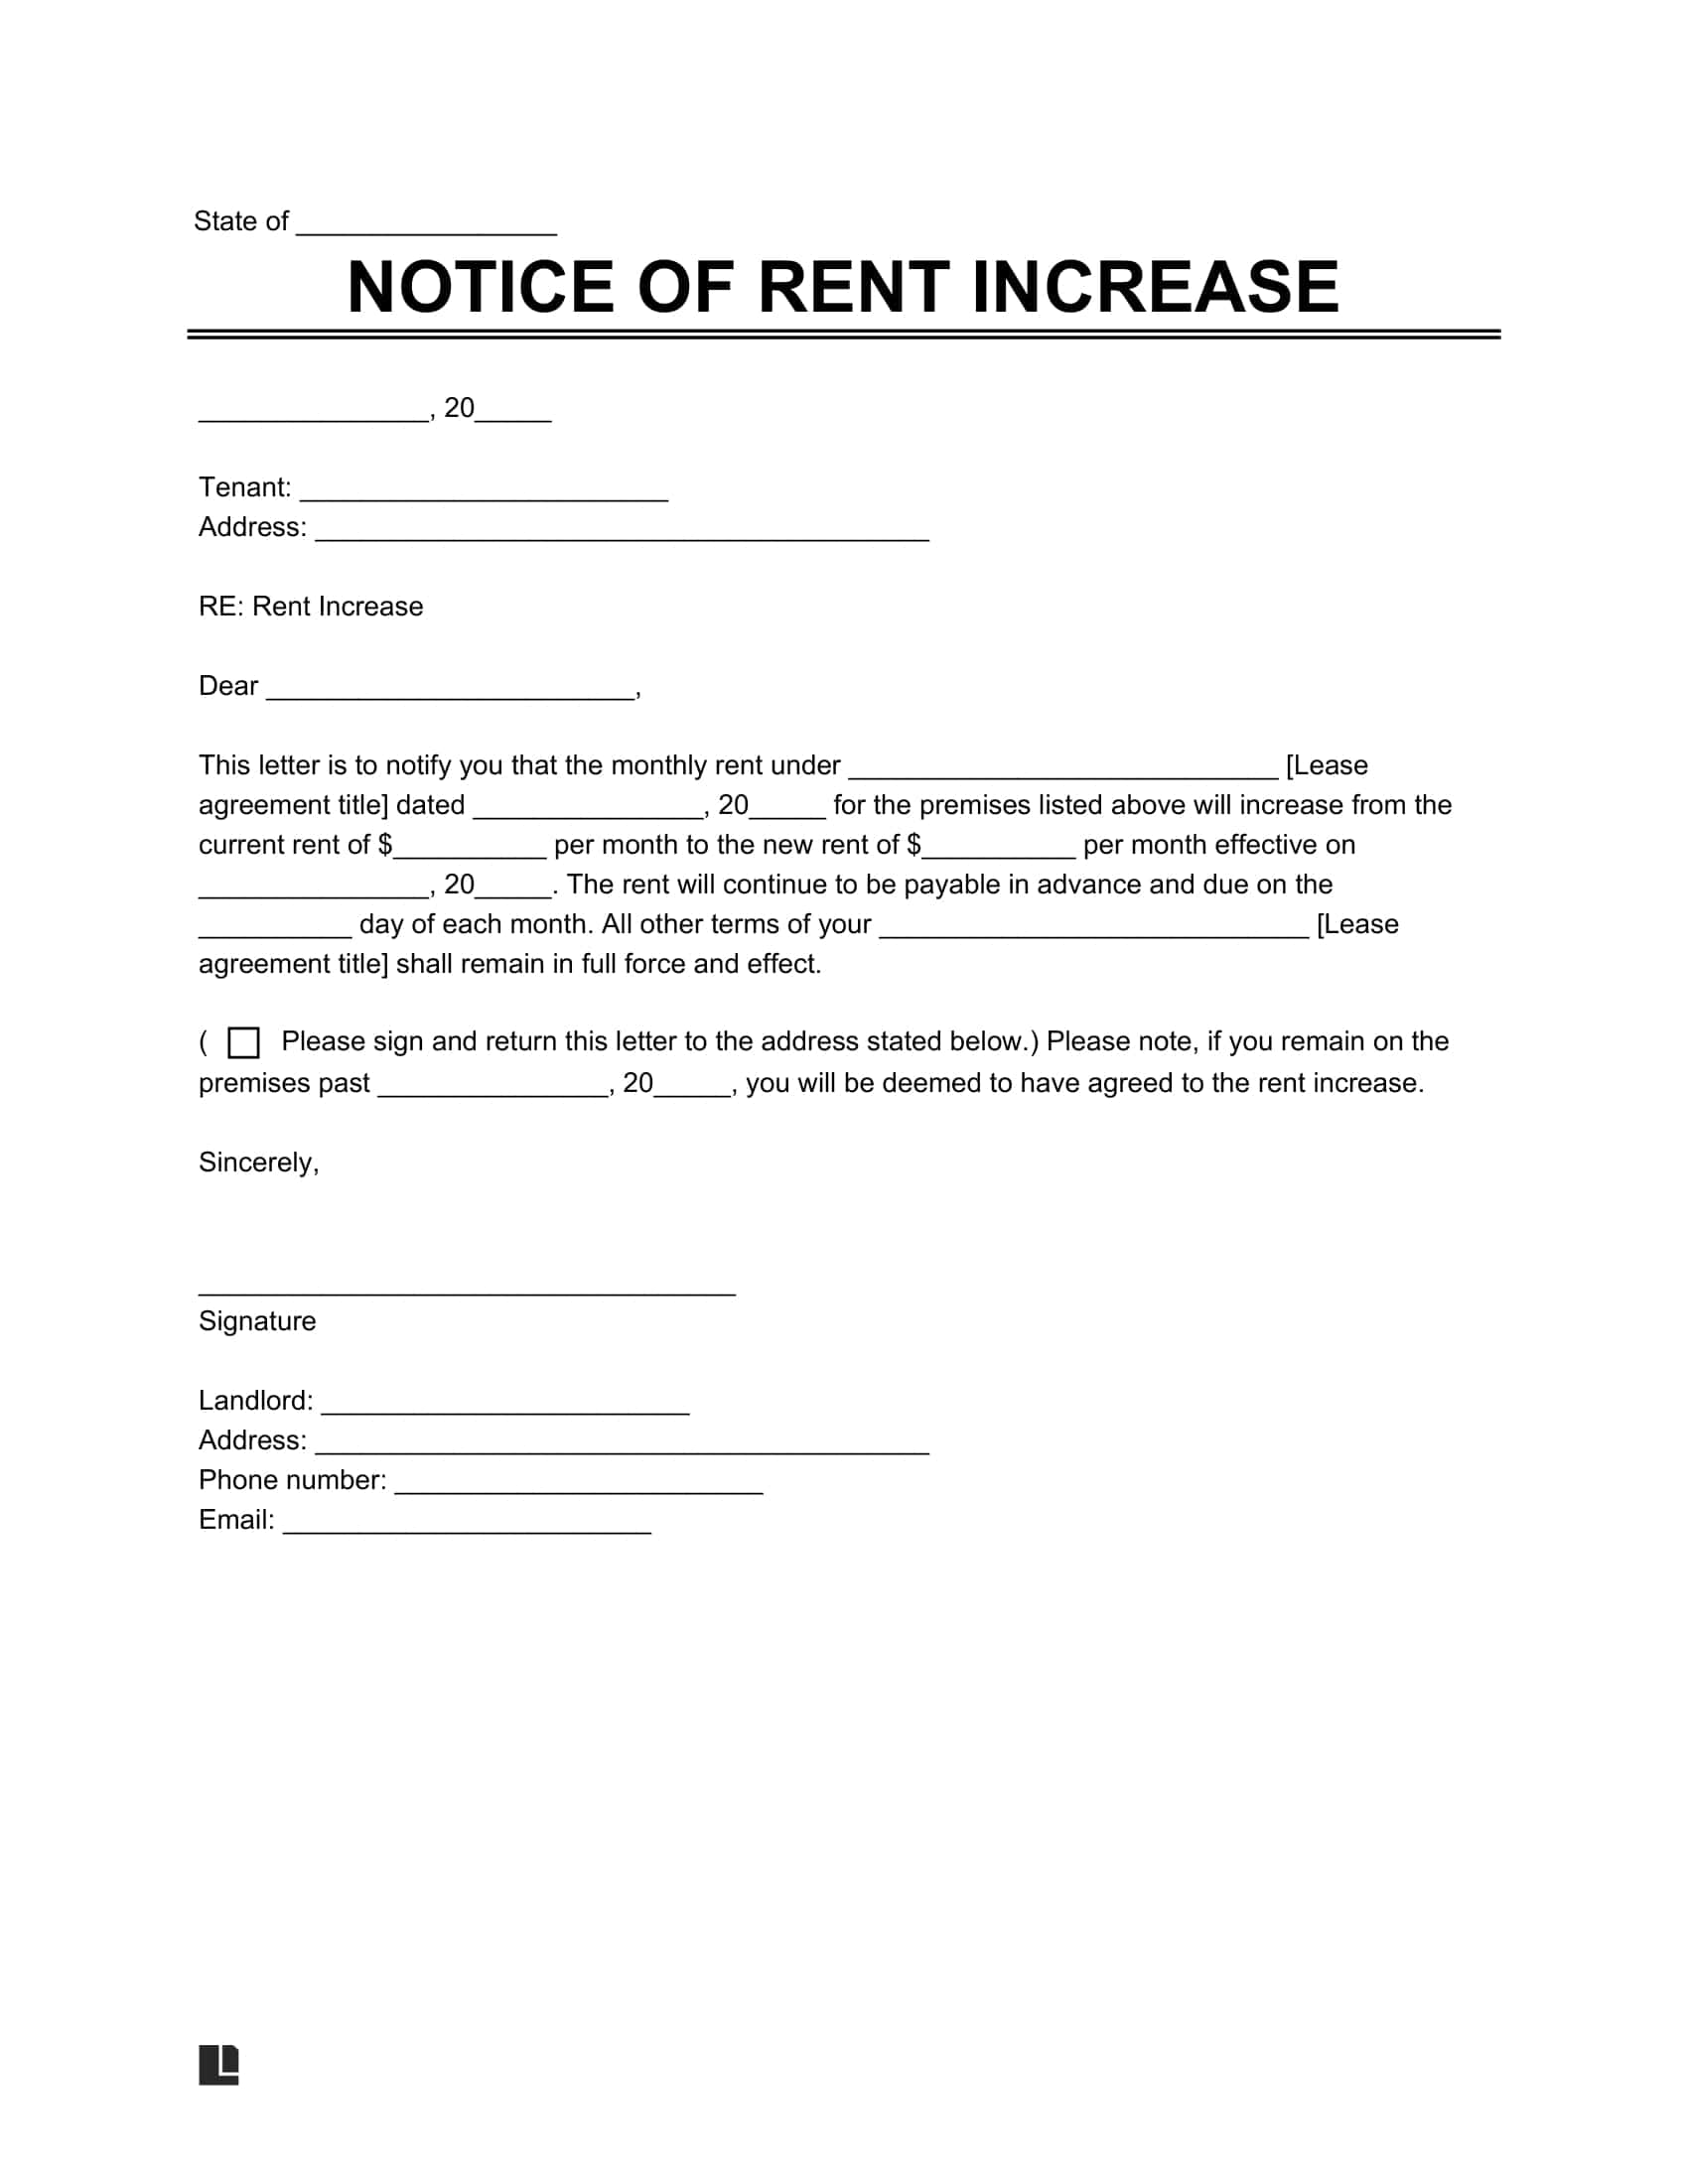 Notice of rent increase screenshot